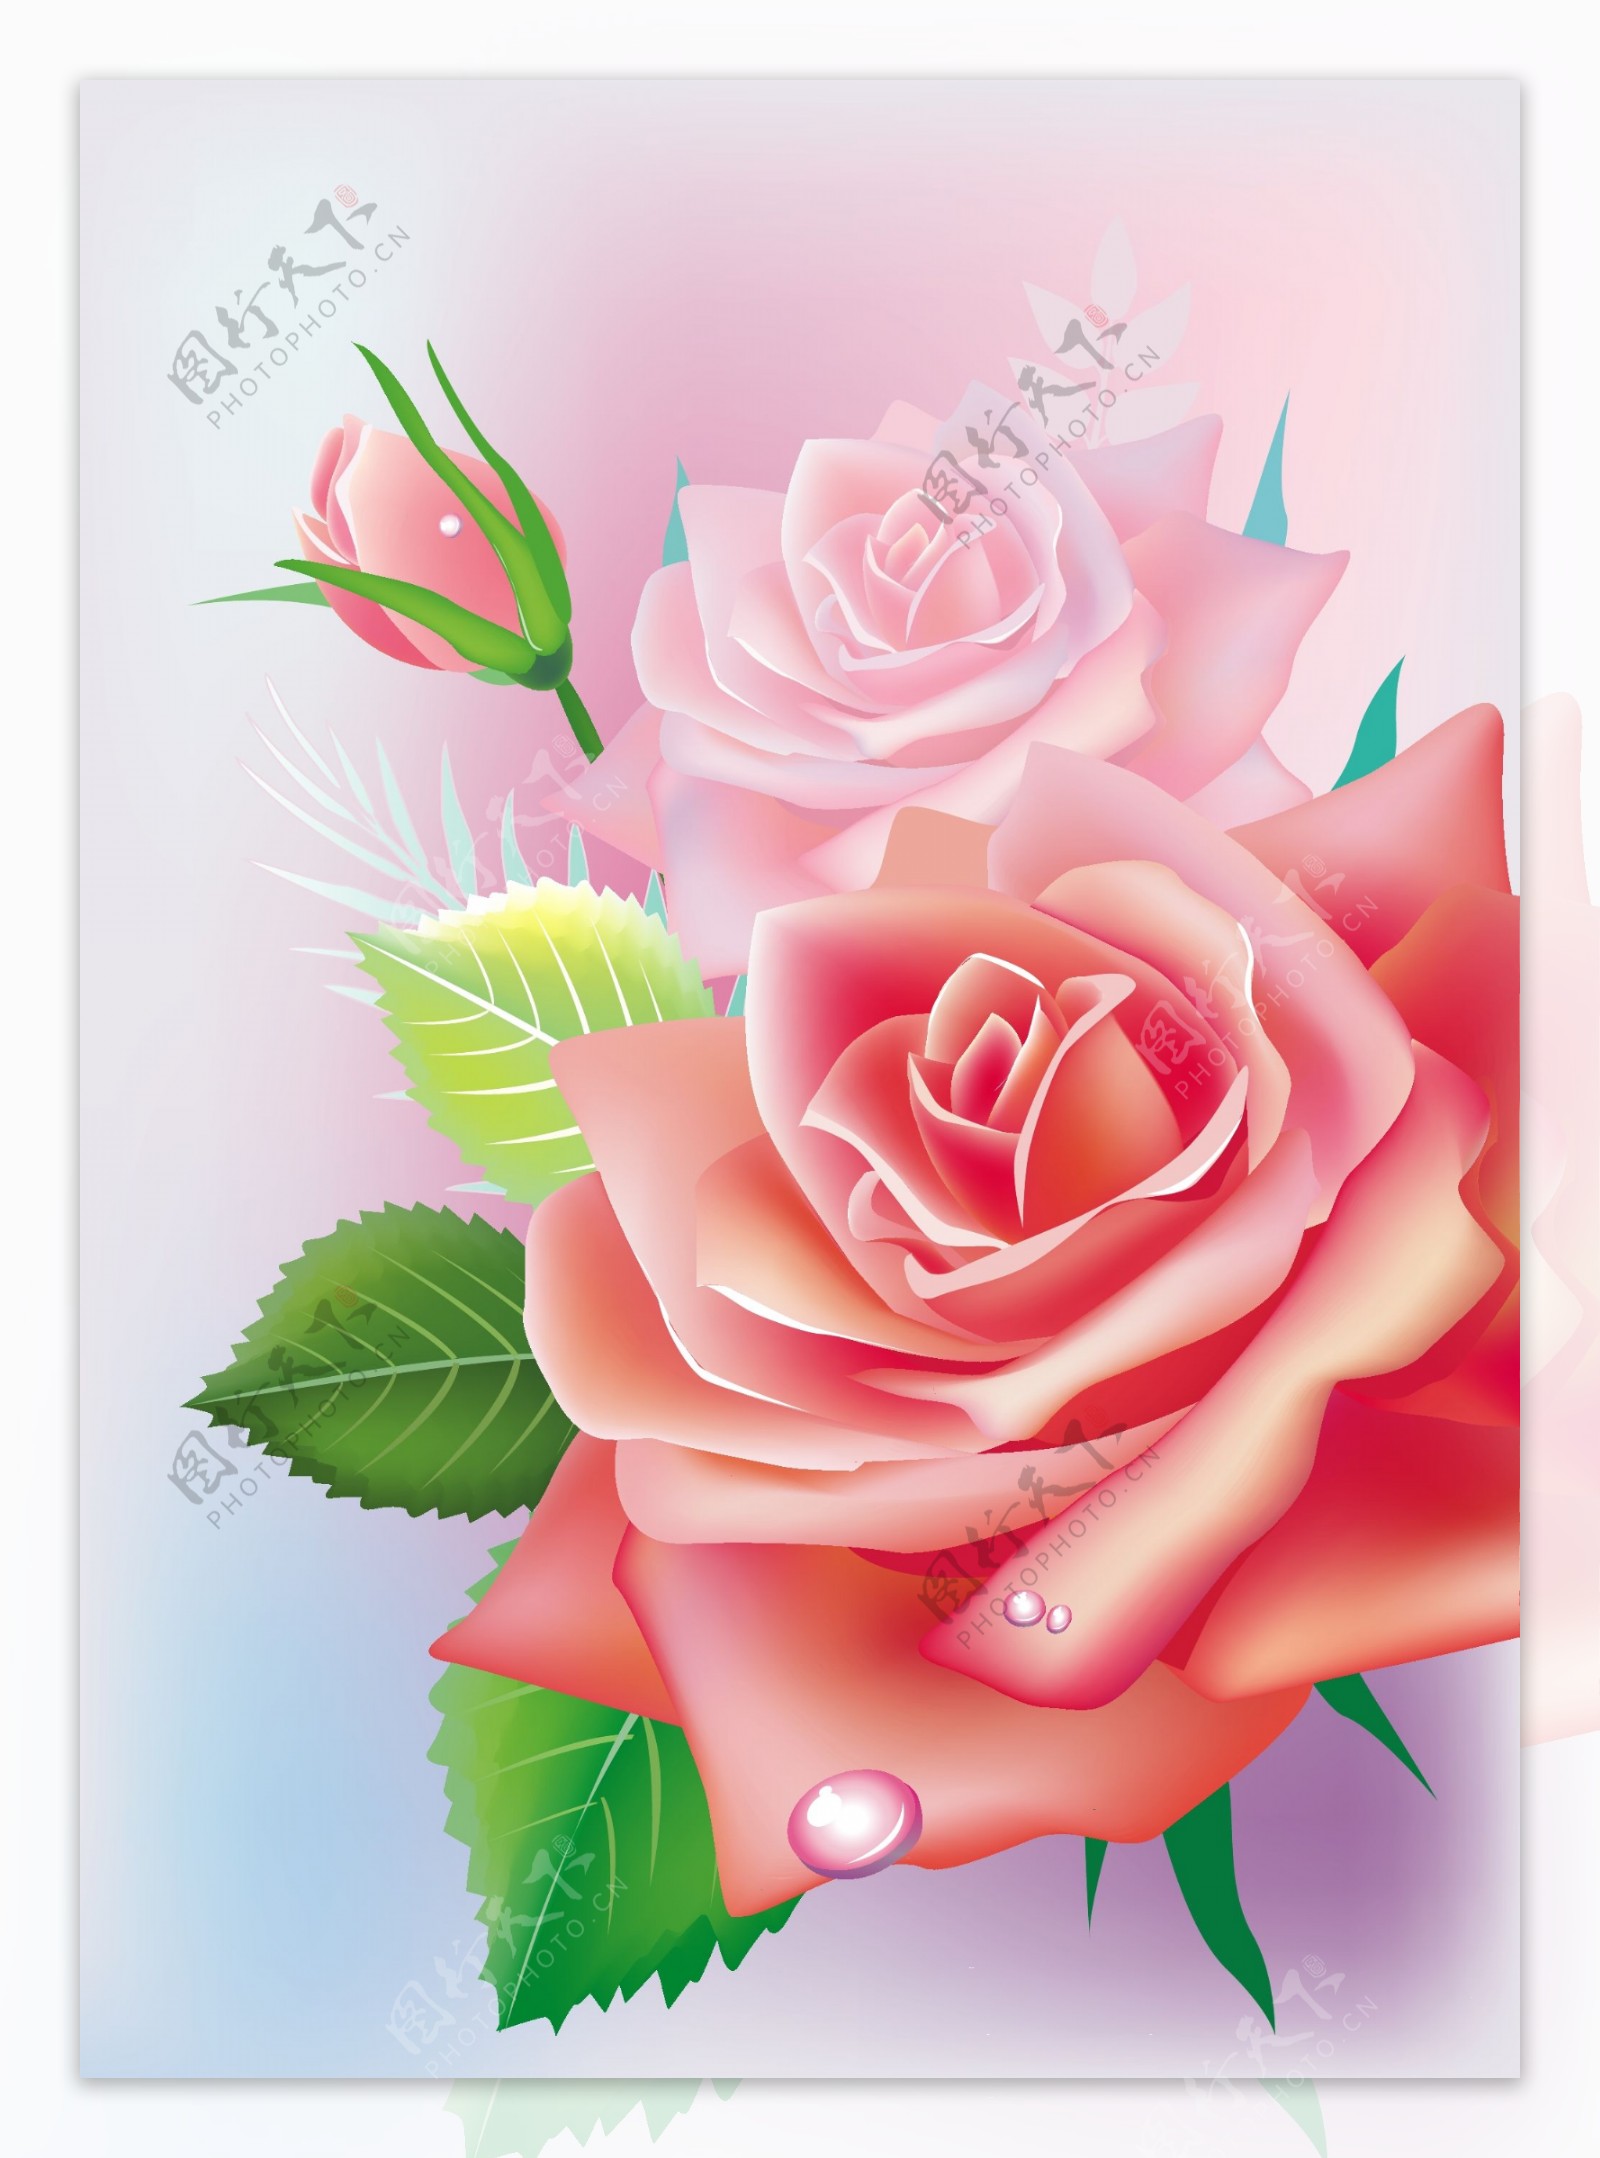 娇艳的玫瑰花背景矢量素材